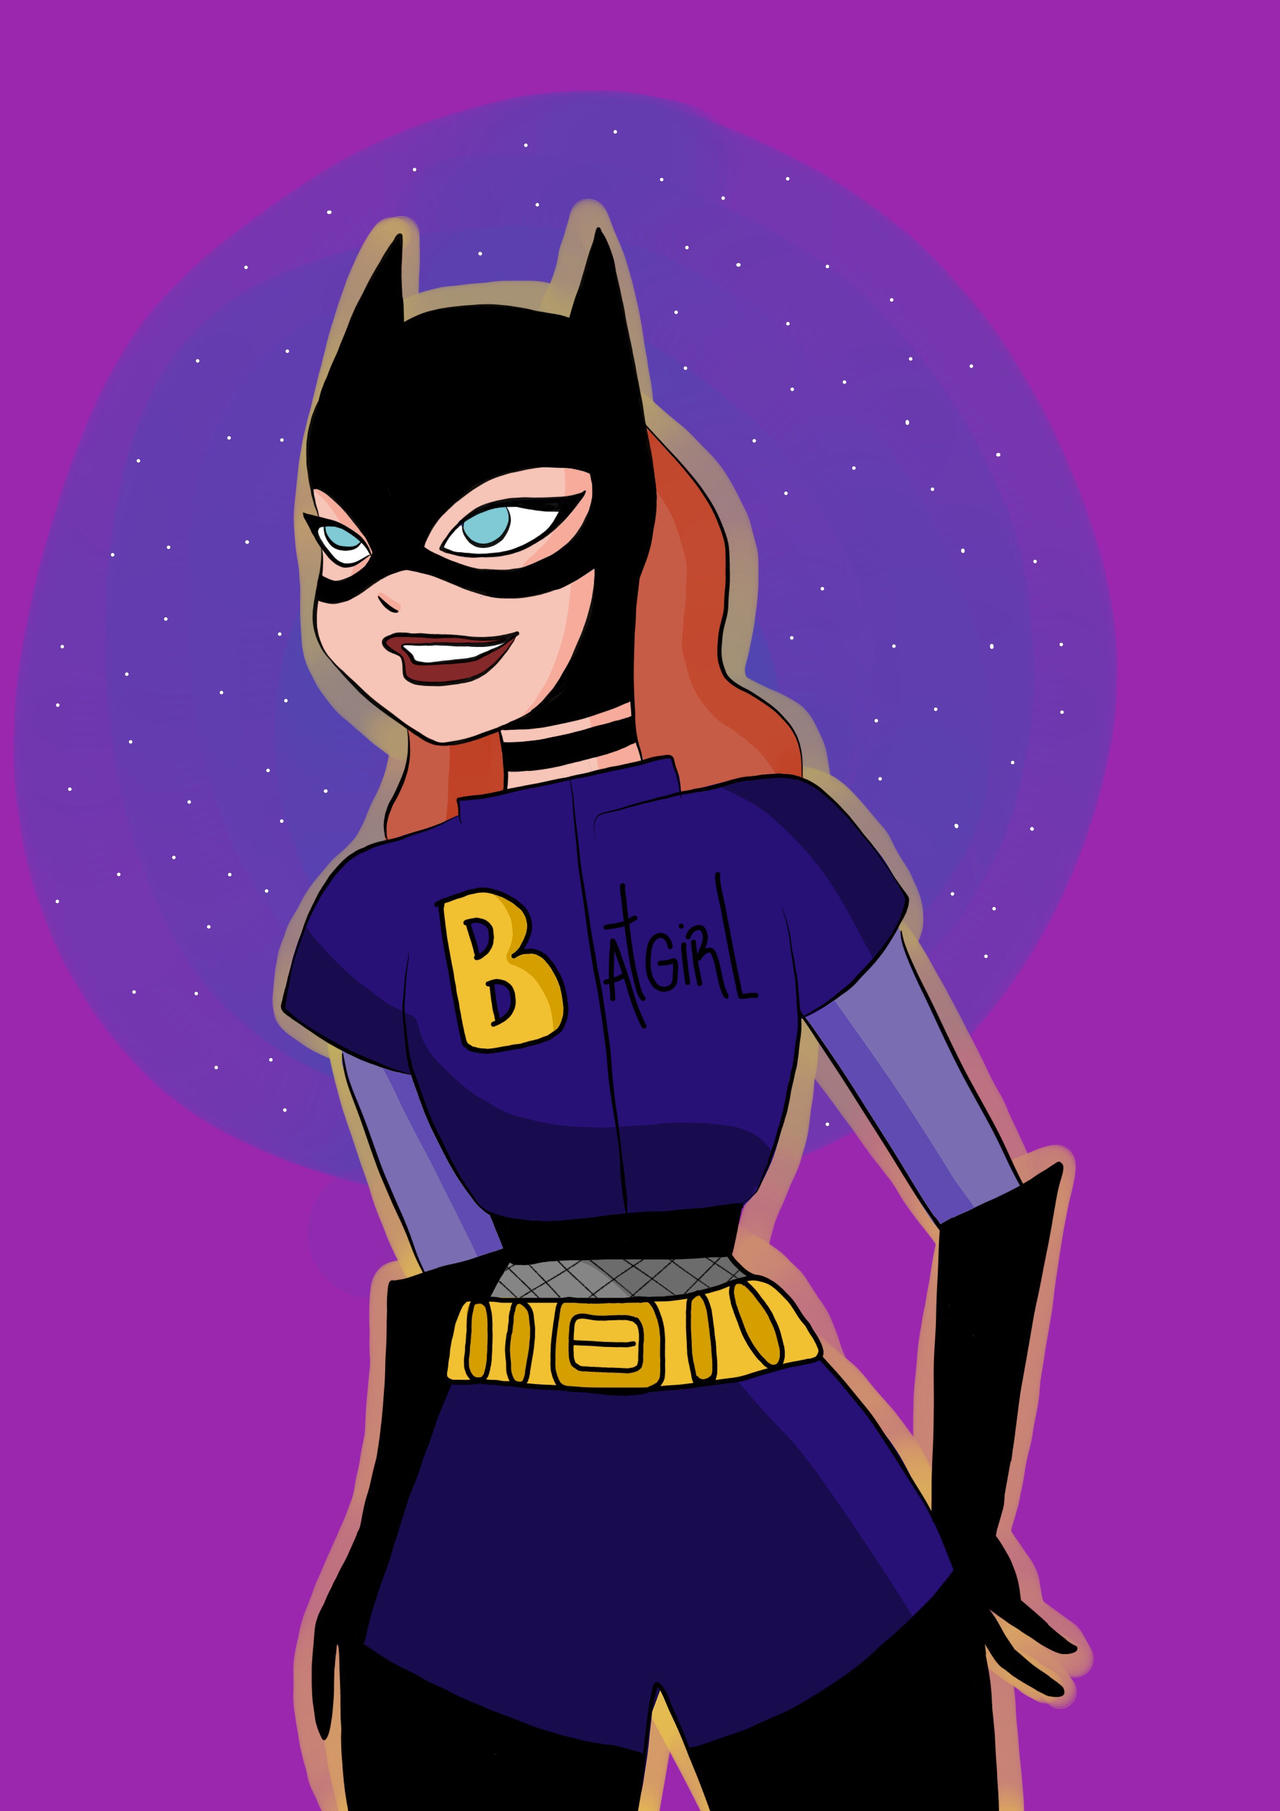 Batgirl Batman the animated series fan art by heycatcat on DeviantArt